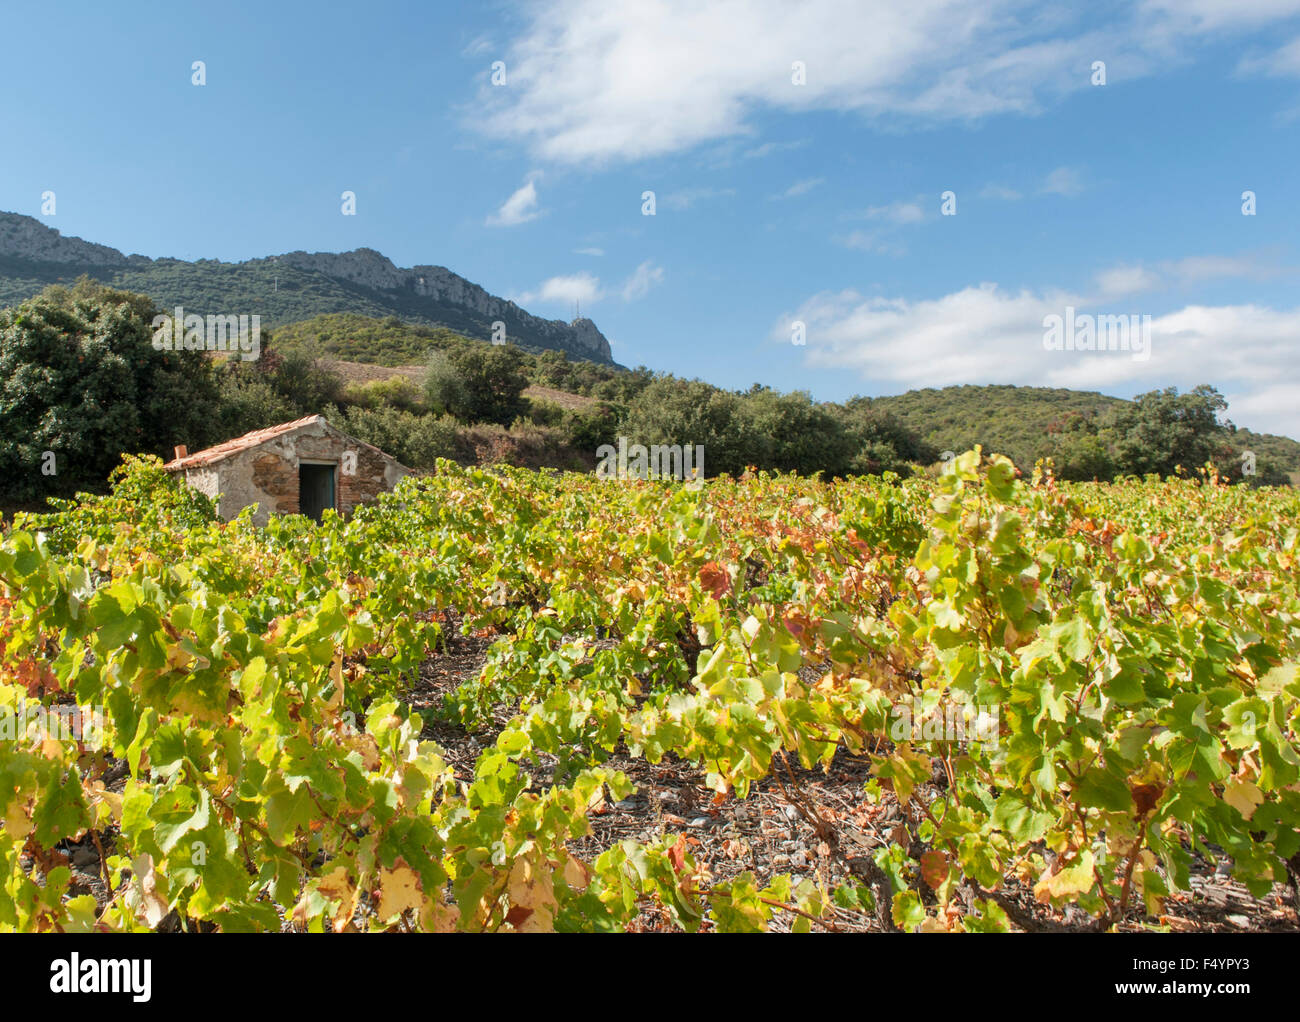 Ein Winzer Hügel in einem Weinberg in der Nähe von Maury im Agly Tal in der Nähe von Perpignan, Roussillon, Frankreich Stockfoto